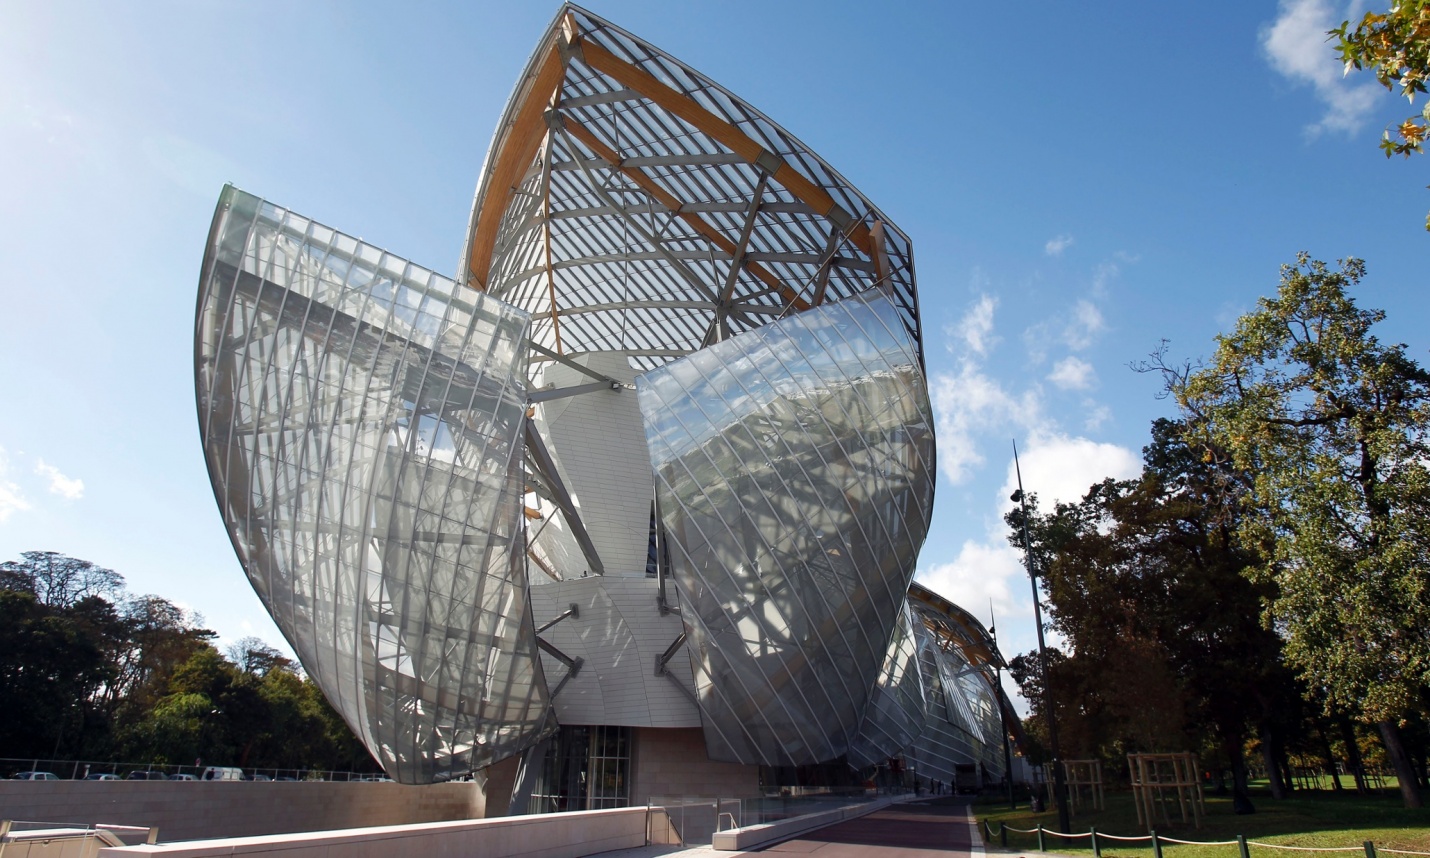 Fondation Louis Vuitton art museum opens in Paris